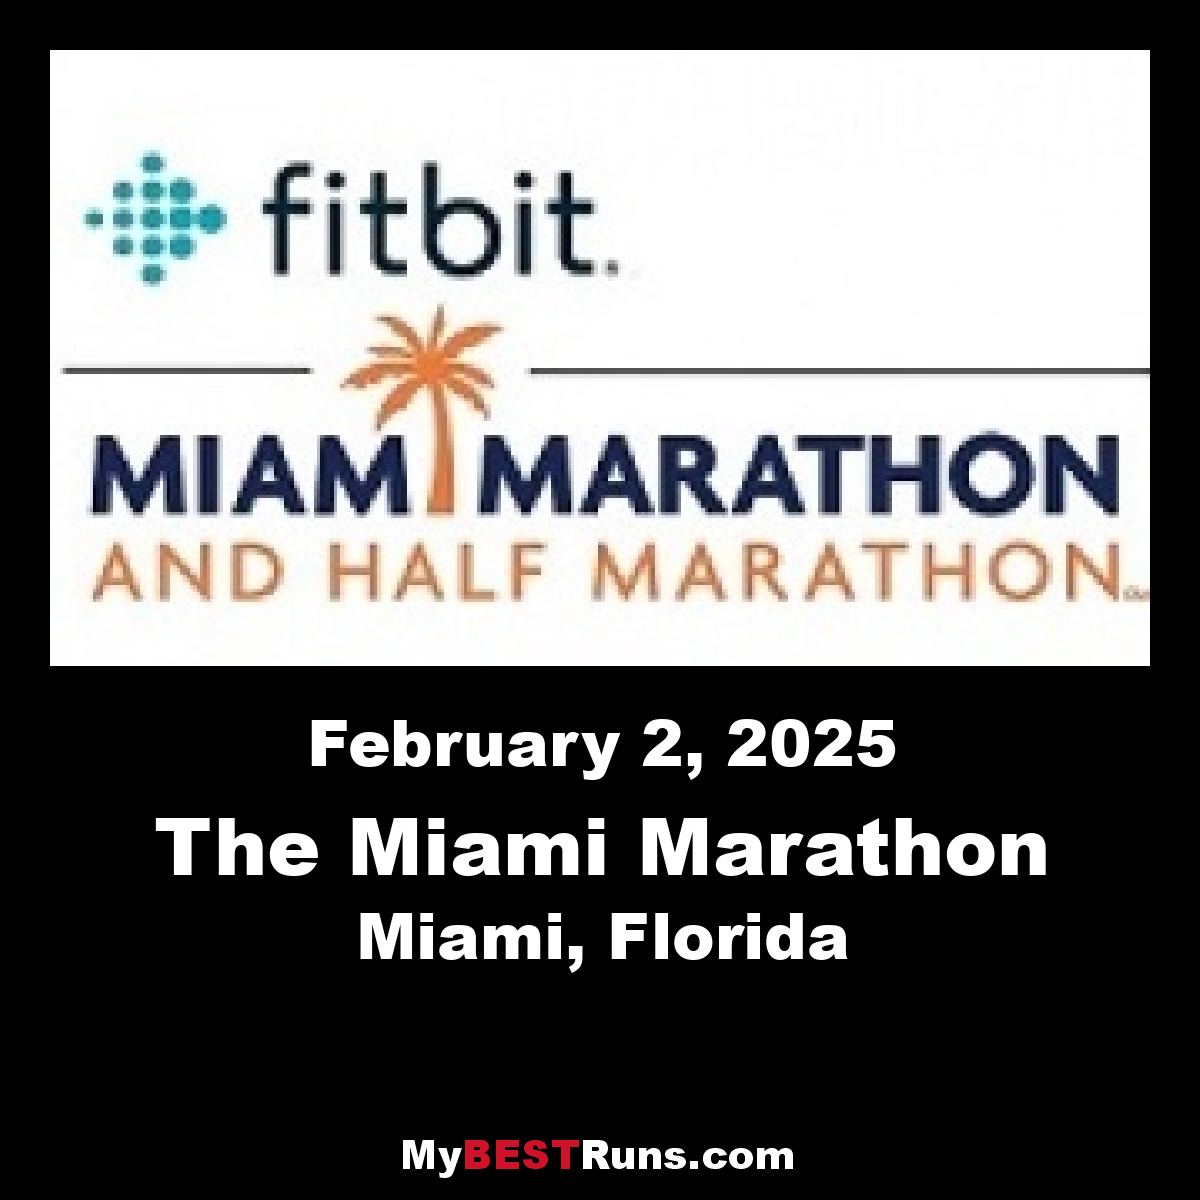 The Miami Marathon